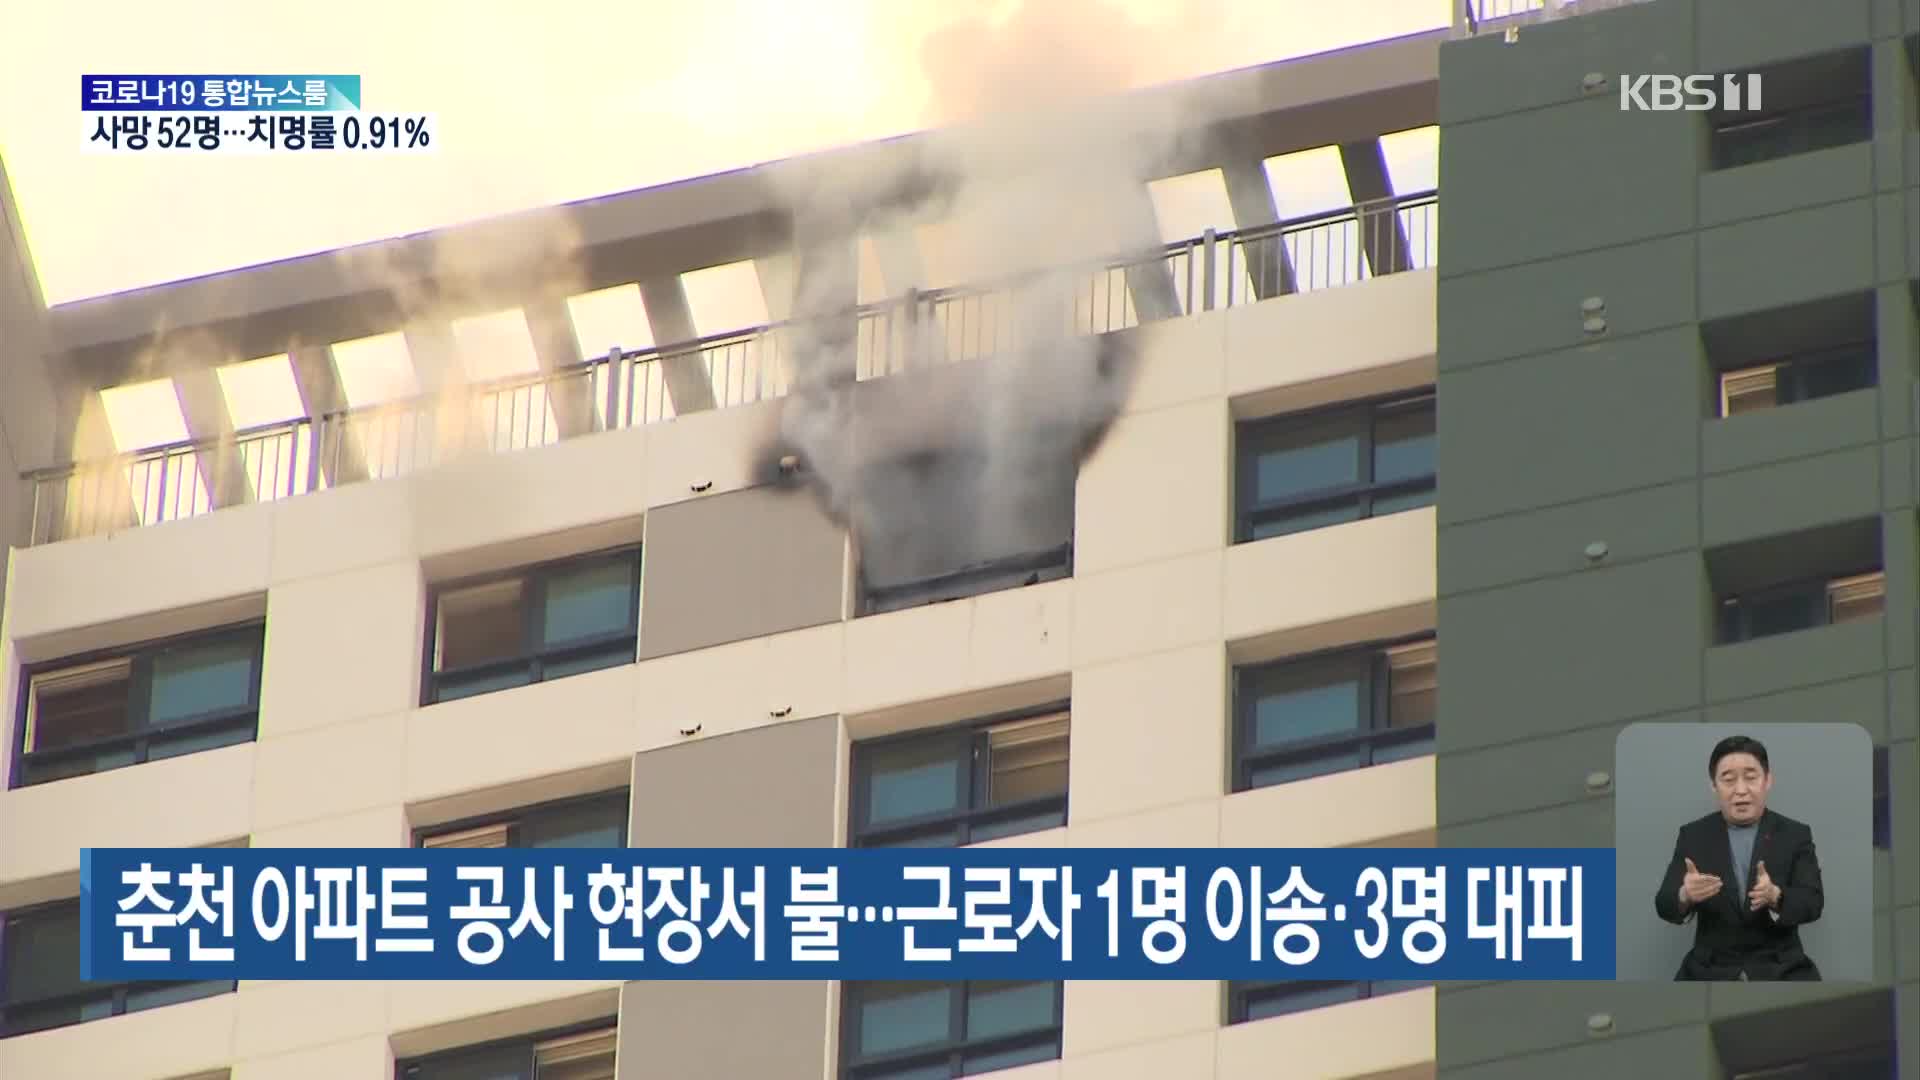 춘천 아파트 공사 현장서 불…근로자 1명 이송·3명 대피